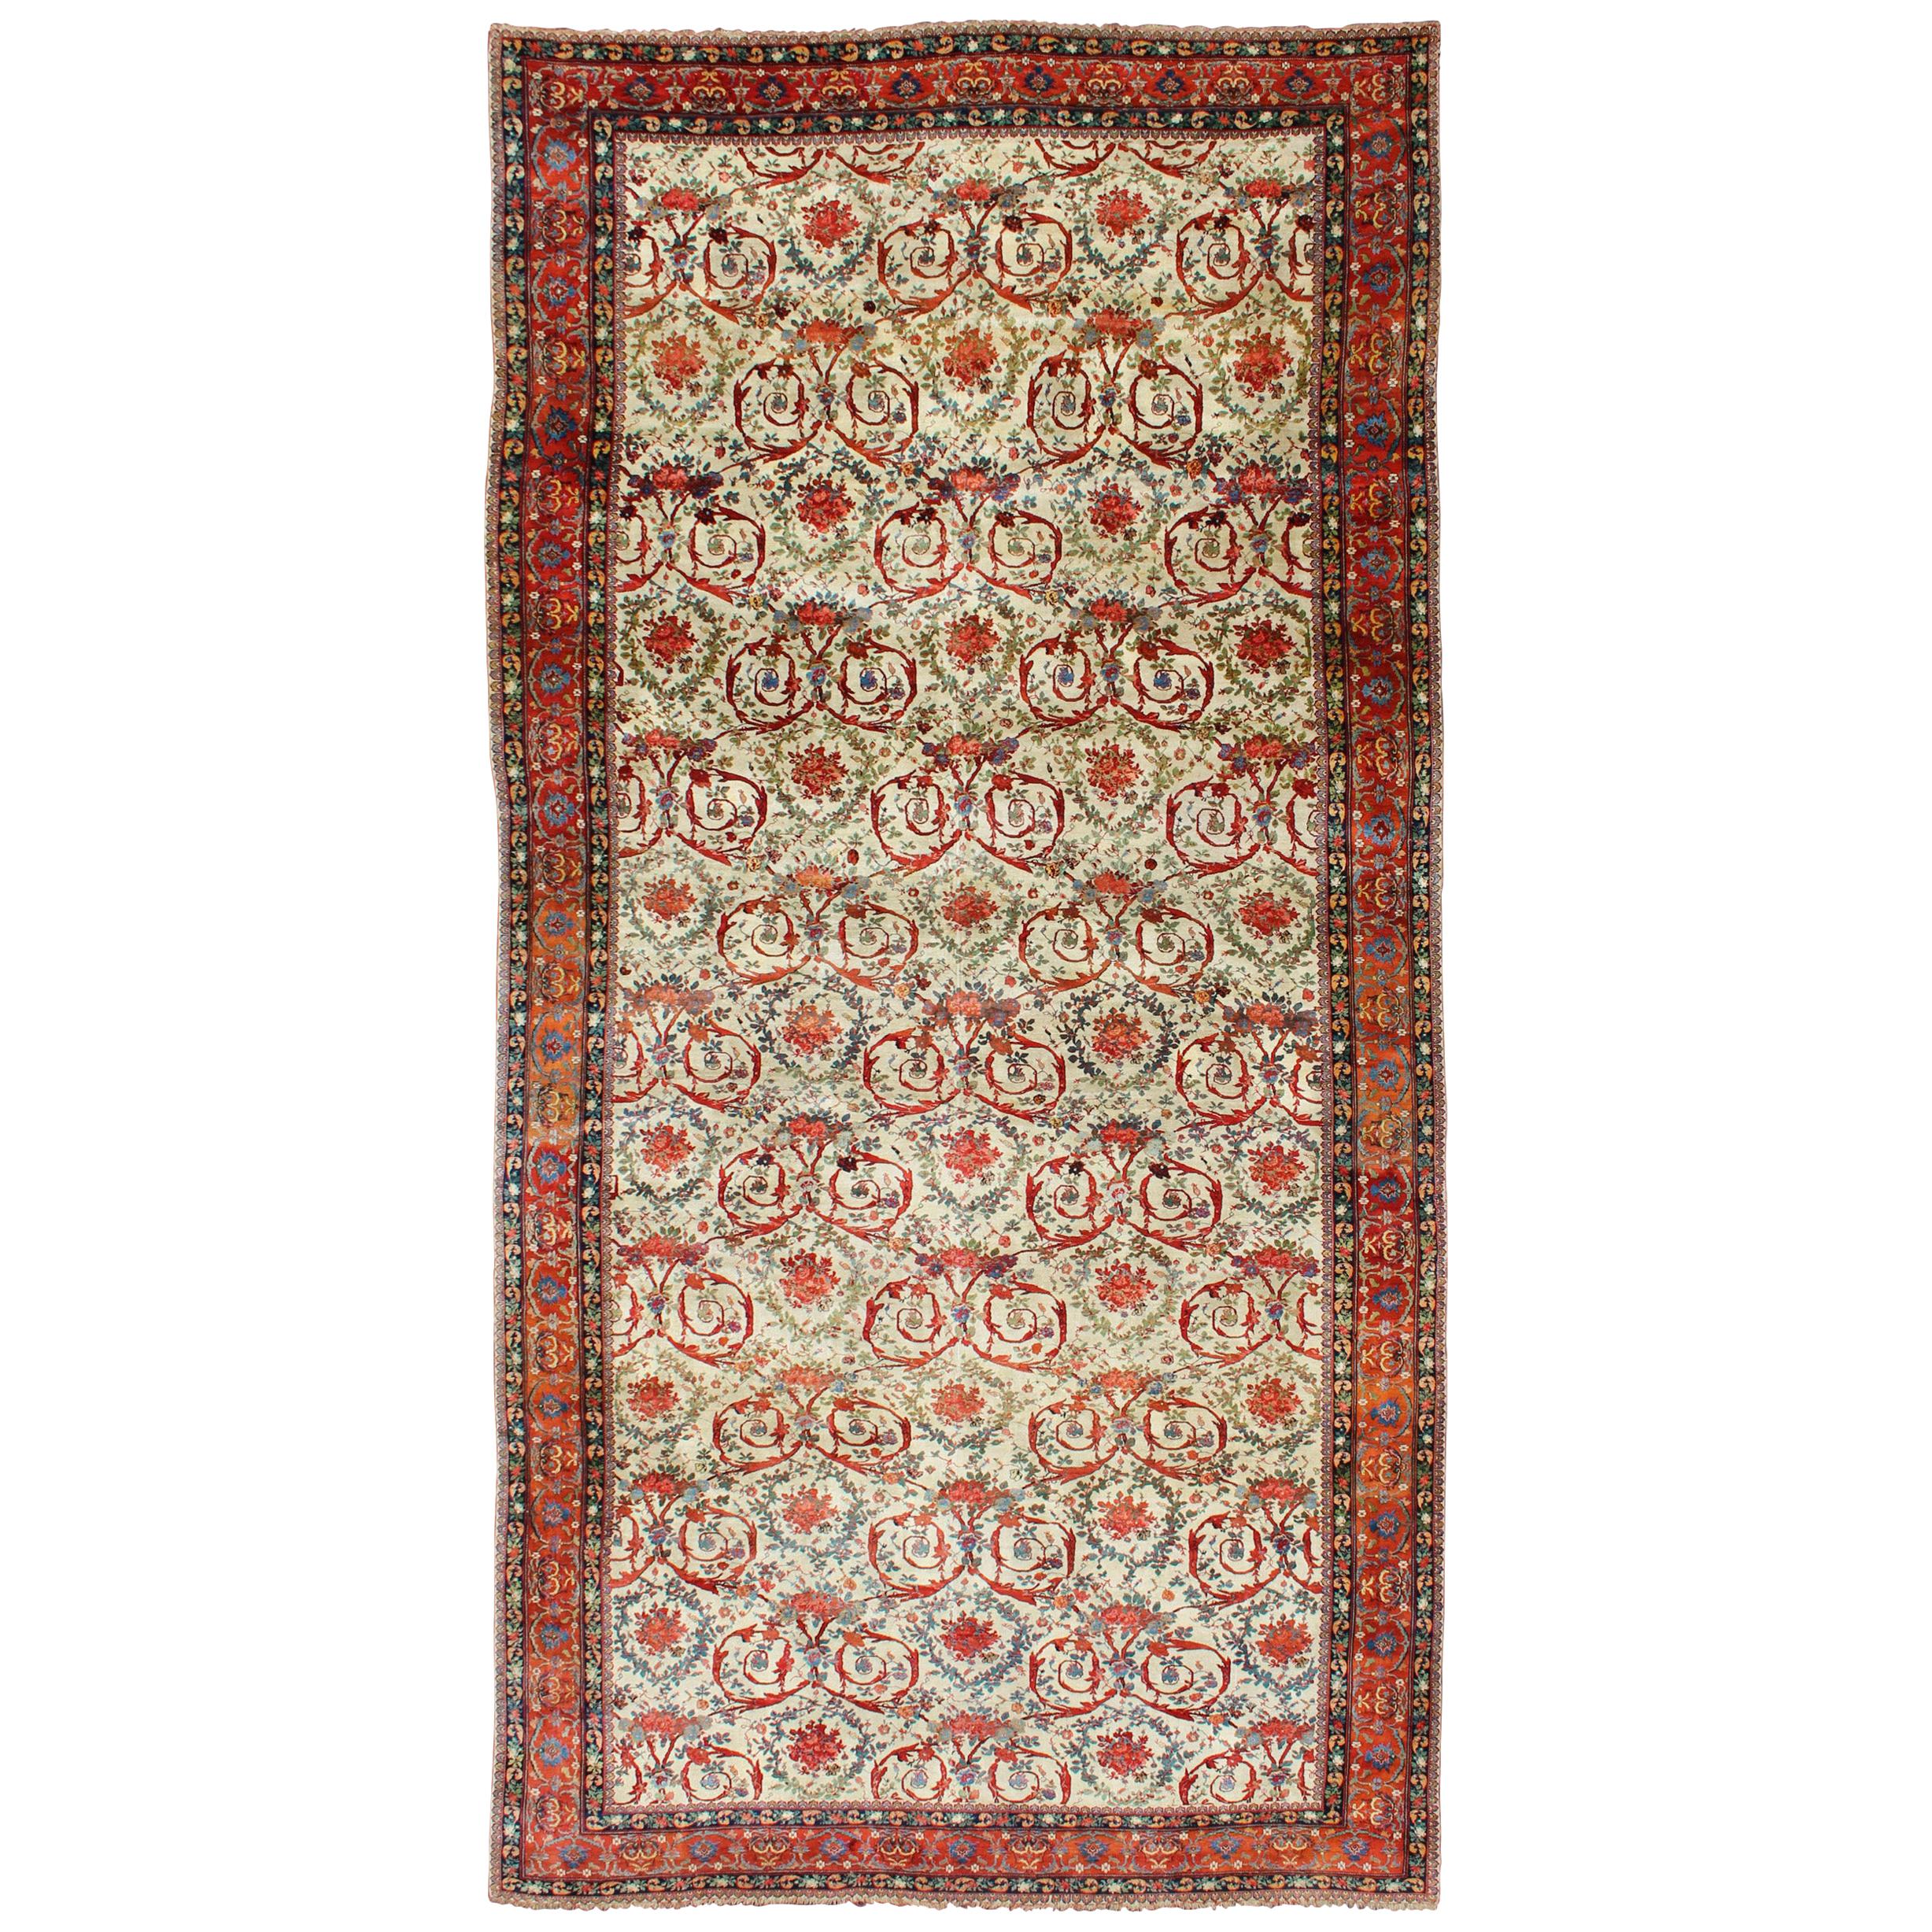 Großer antiker persischer Bidjar-Teppich mit elfenbeinfarbenem Hintergrund und mehrfarbigen Farben